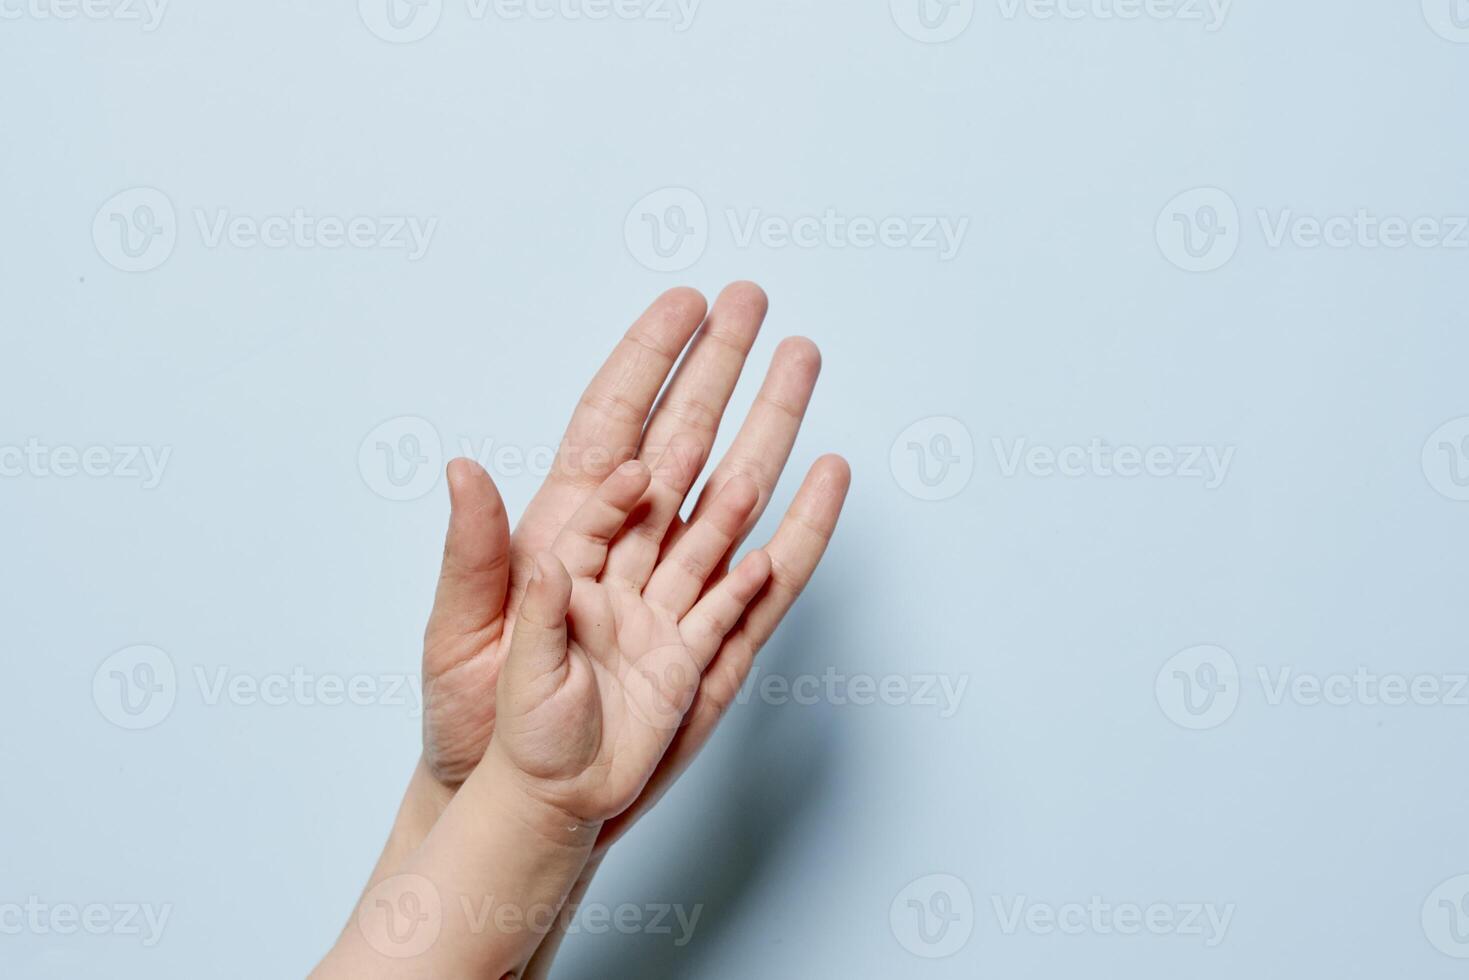 adulto y bebé mano juntos foto